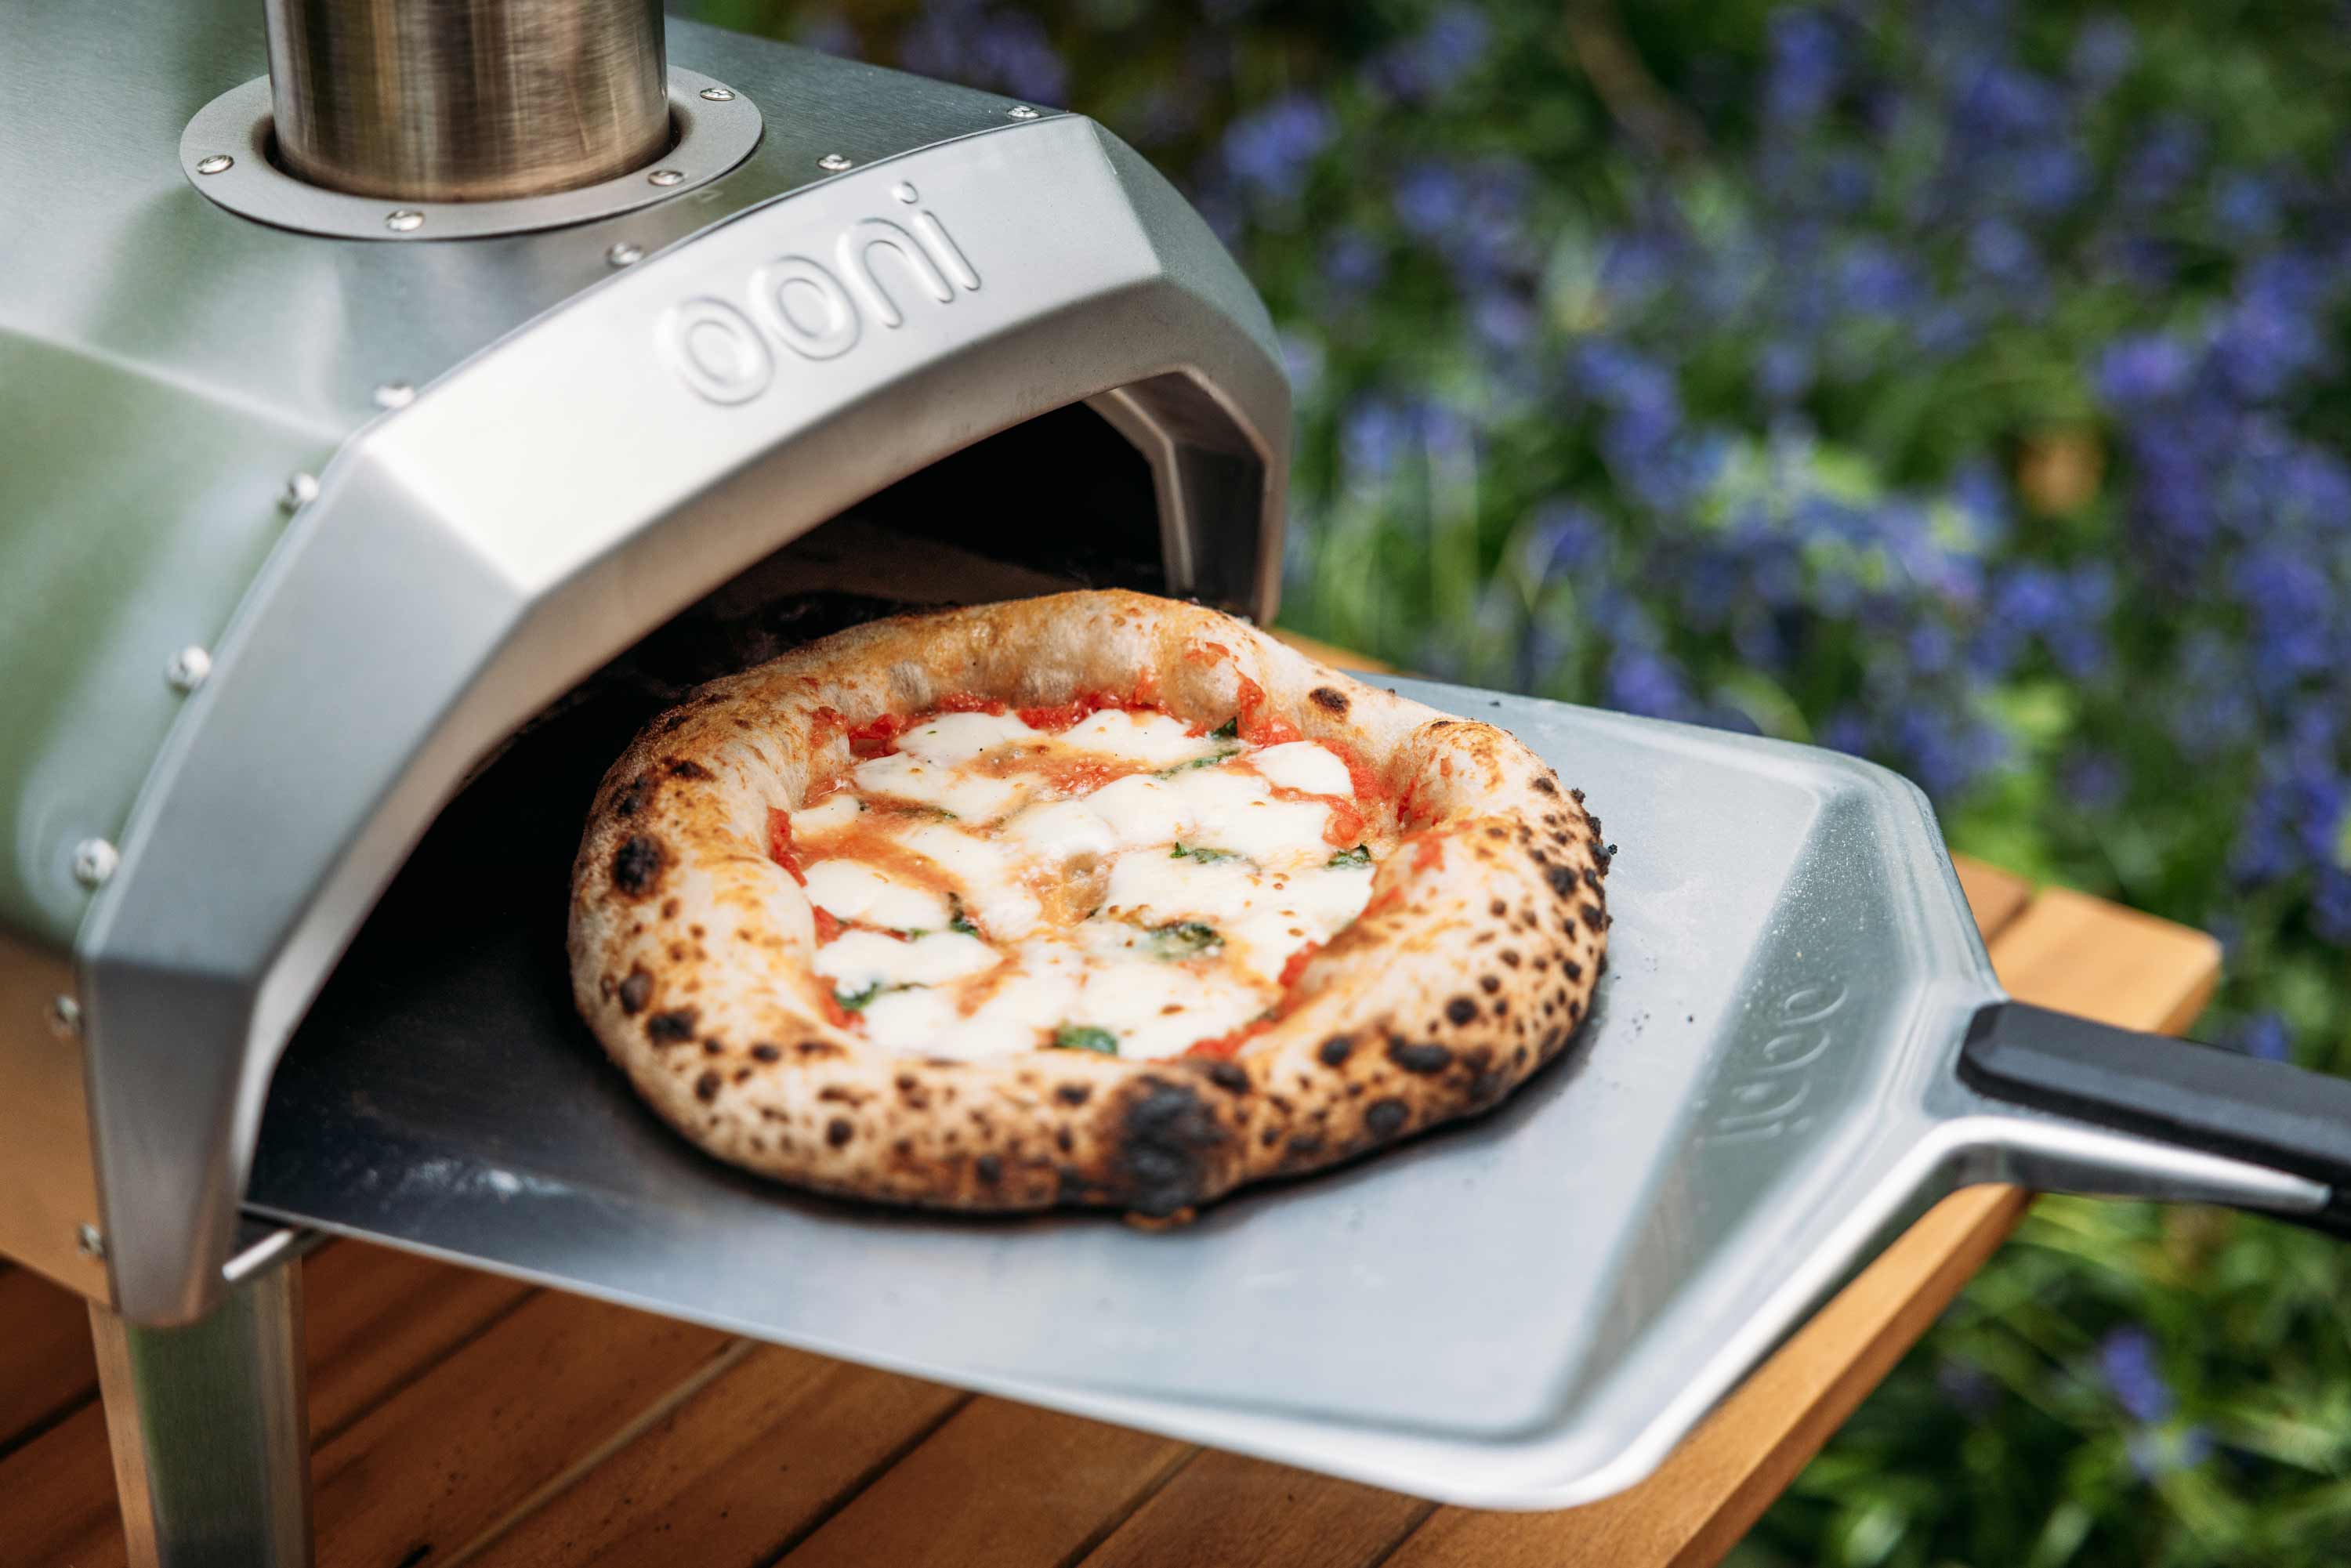 Ooni Karu 12, Multi-Fuel Pizza Oven